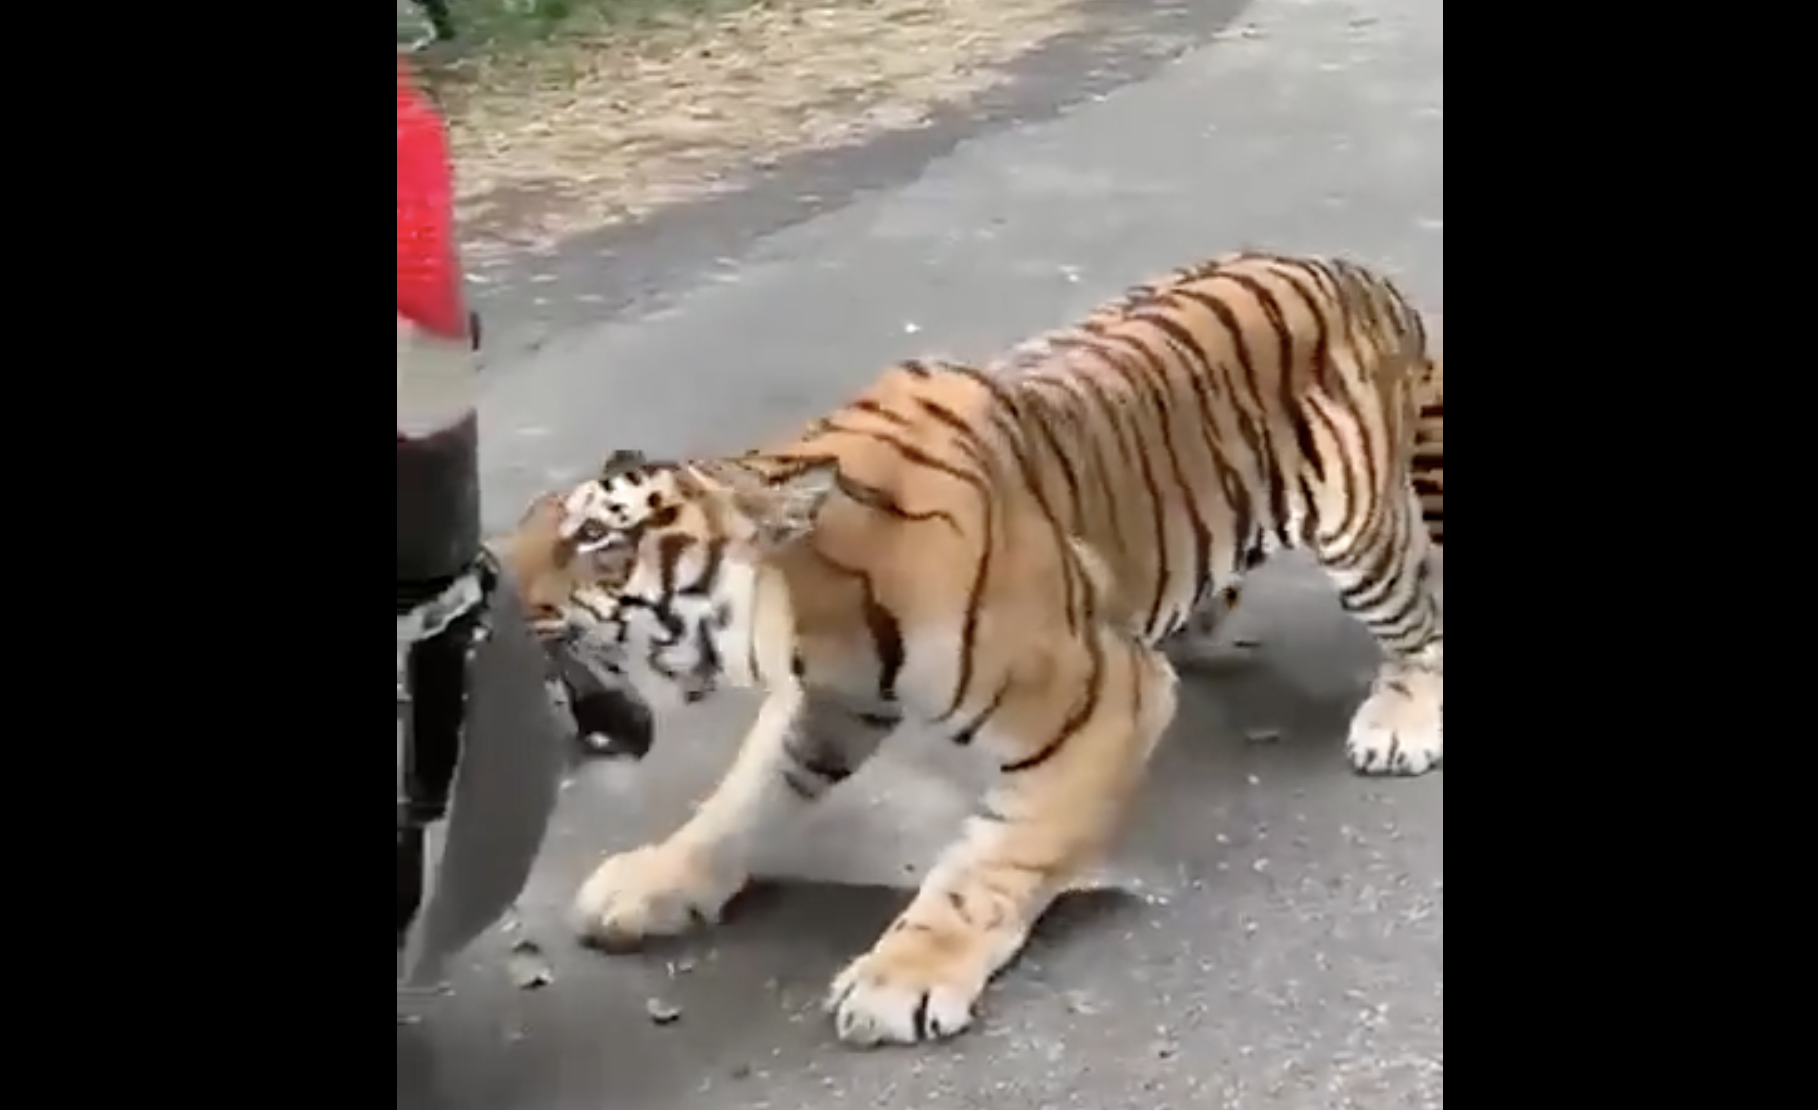 anand mahindra shares a video of tiger tasting a mahindra vehicle